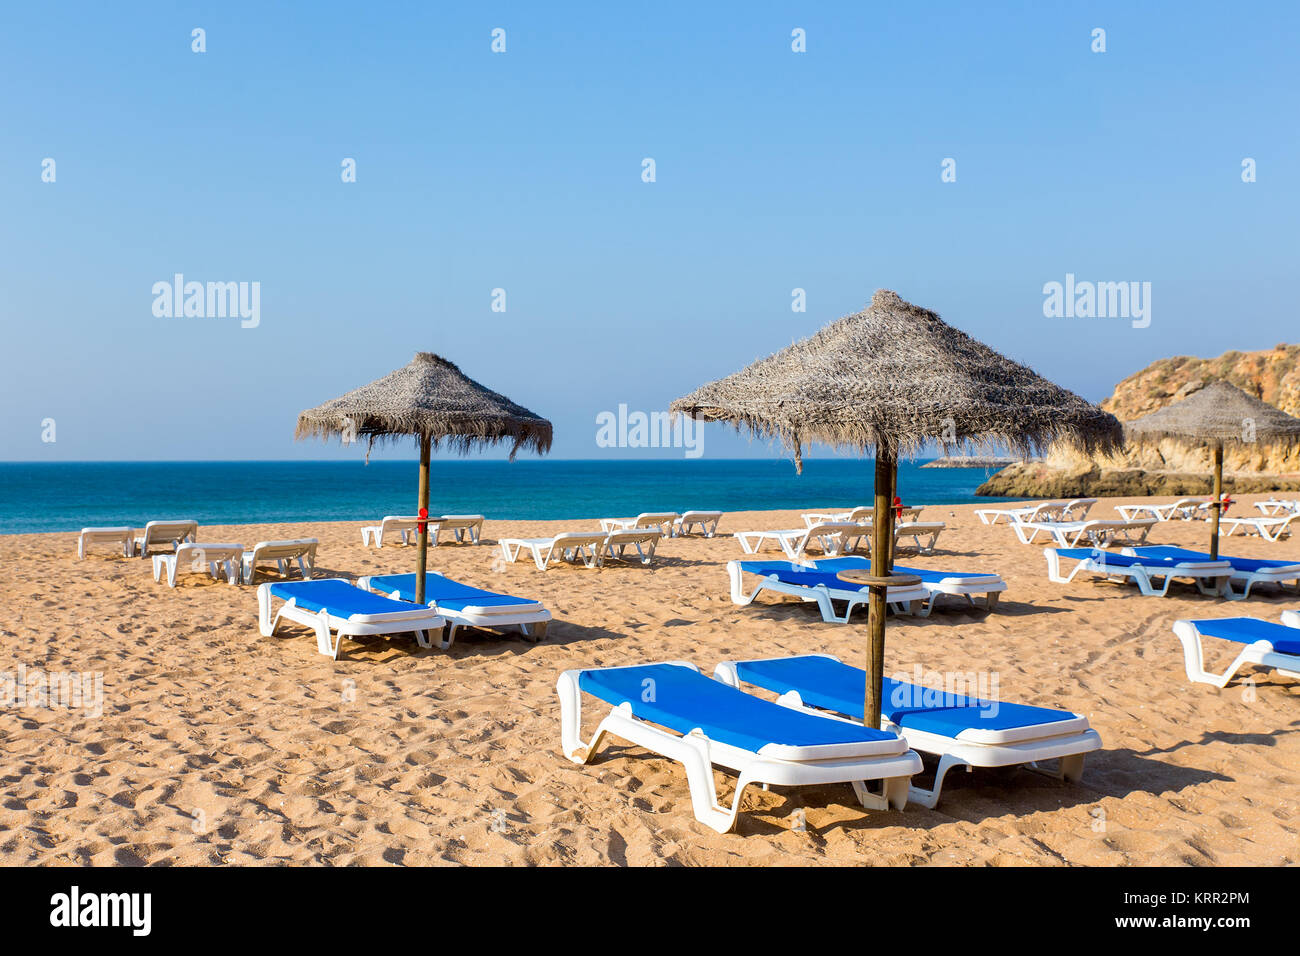 Des parasols de plage en osier Groupe bleu et des lits de plage Banque D'Images